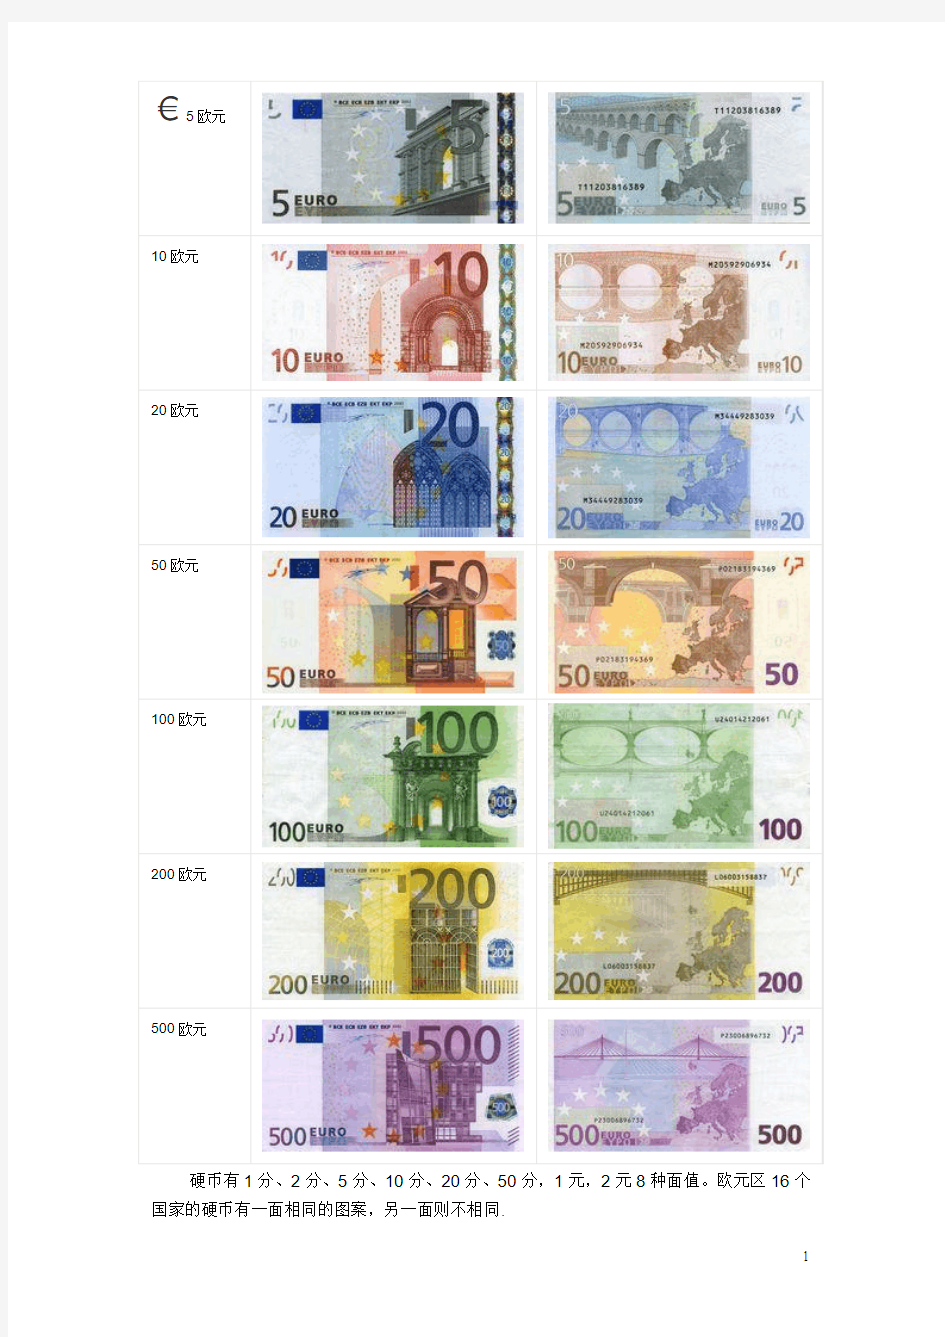 欧洲旅游须知 欧元货币种类及防伪